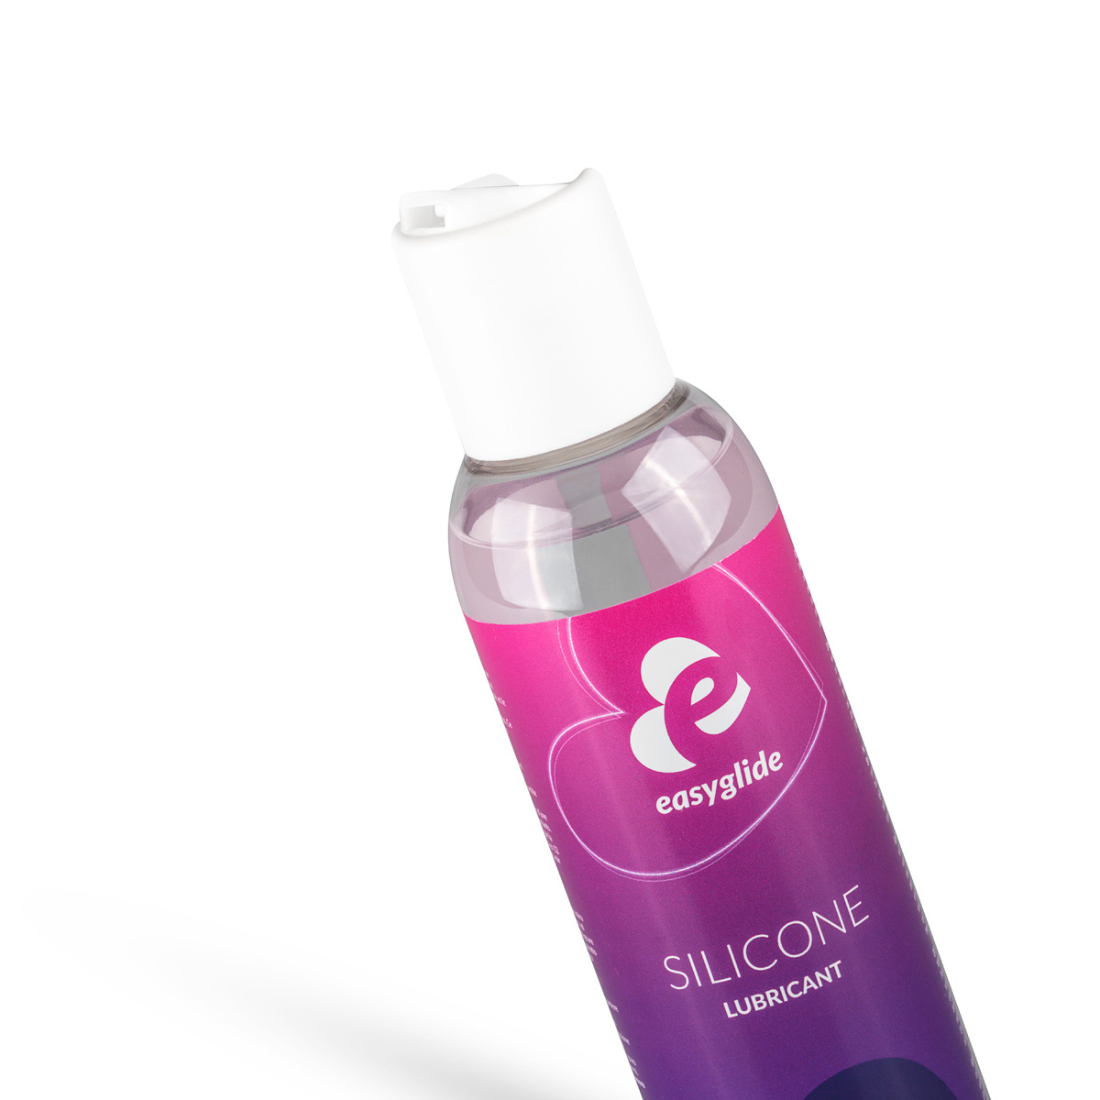 Handig meeneem formaat flesje (150 ml) siliconen glijmiddel met doseerpompje van het merk EasyGlide, ontwikkeld door EasyToys en te koop bij Flavourez.